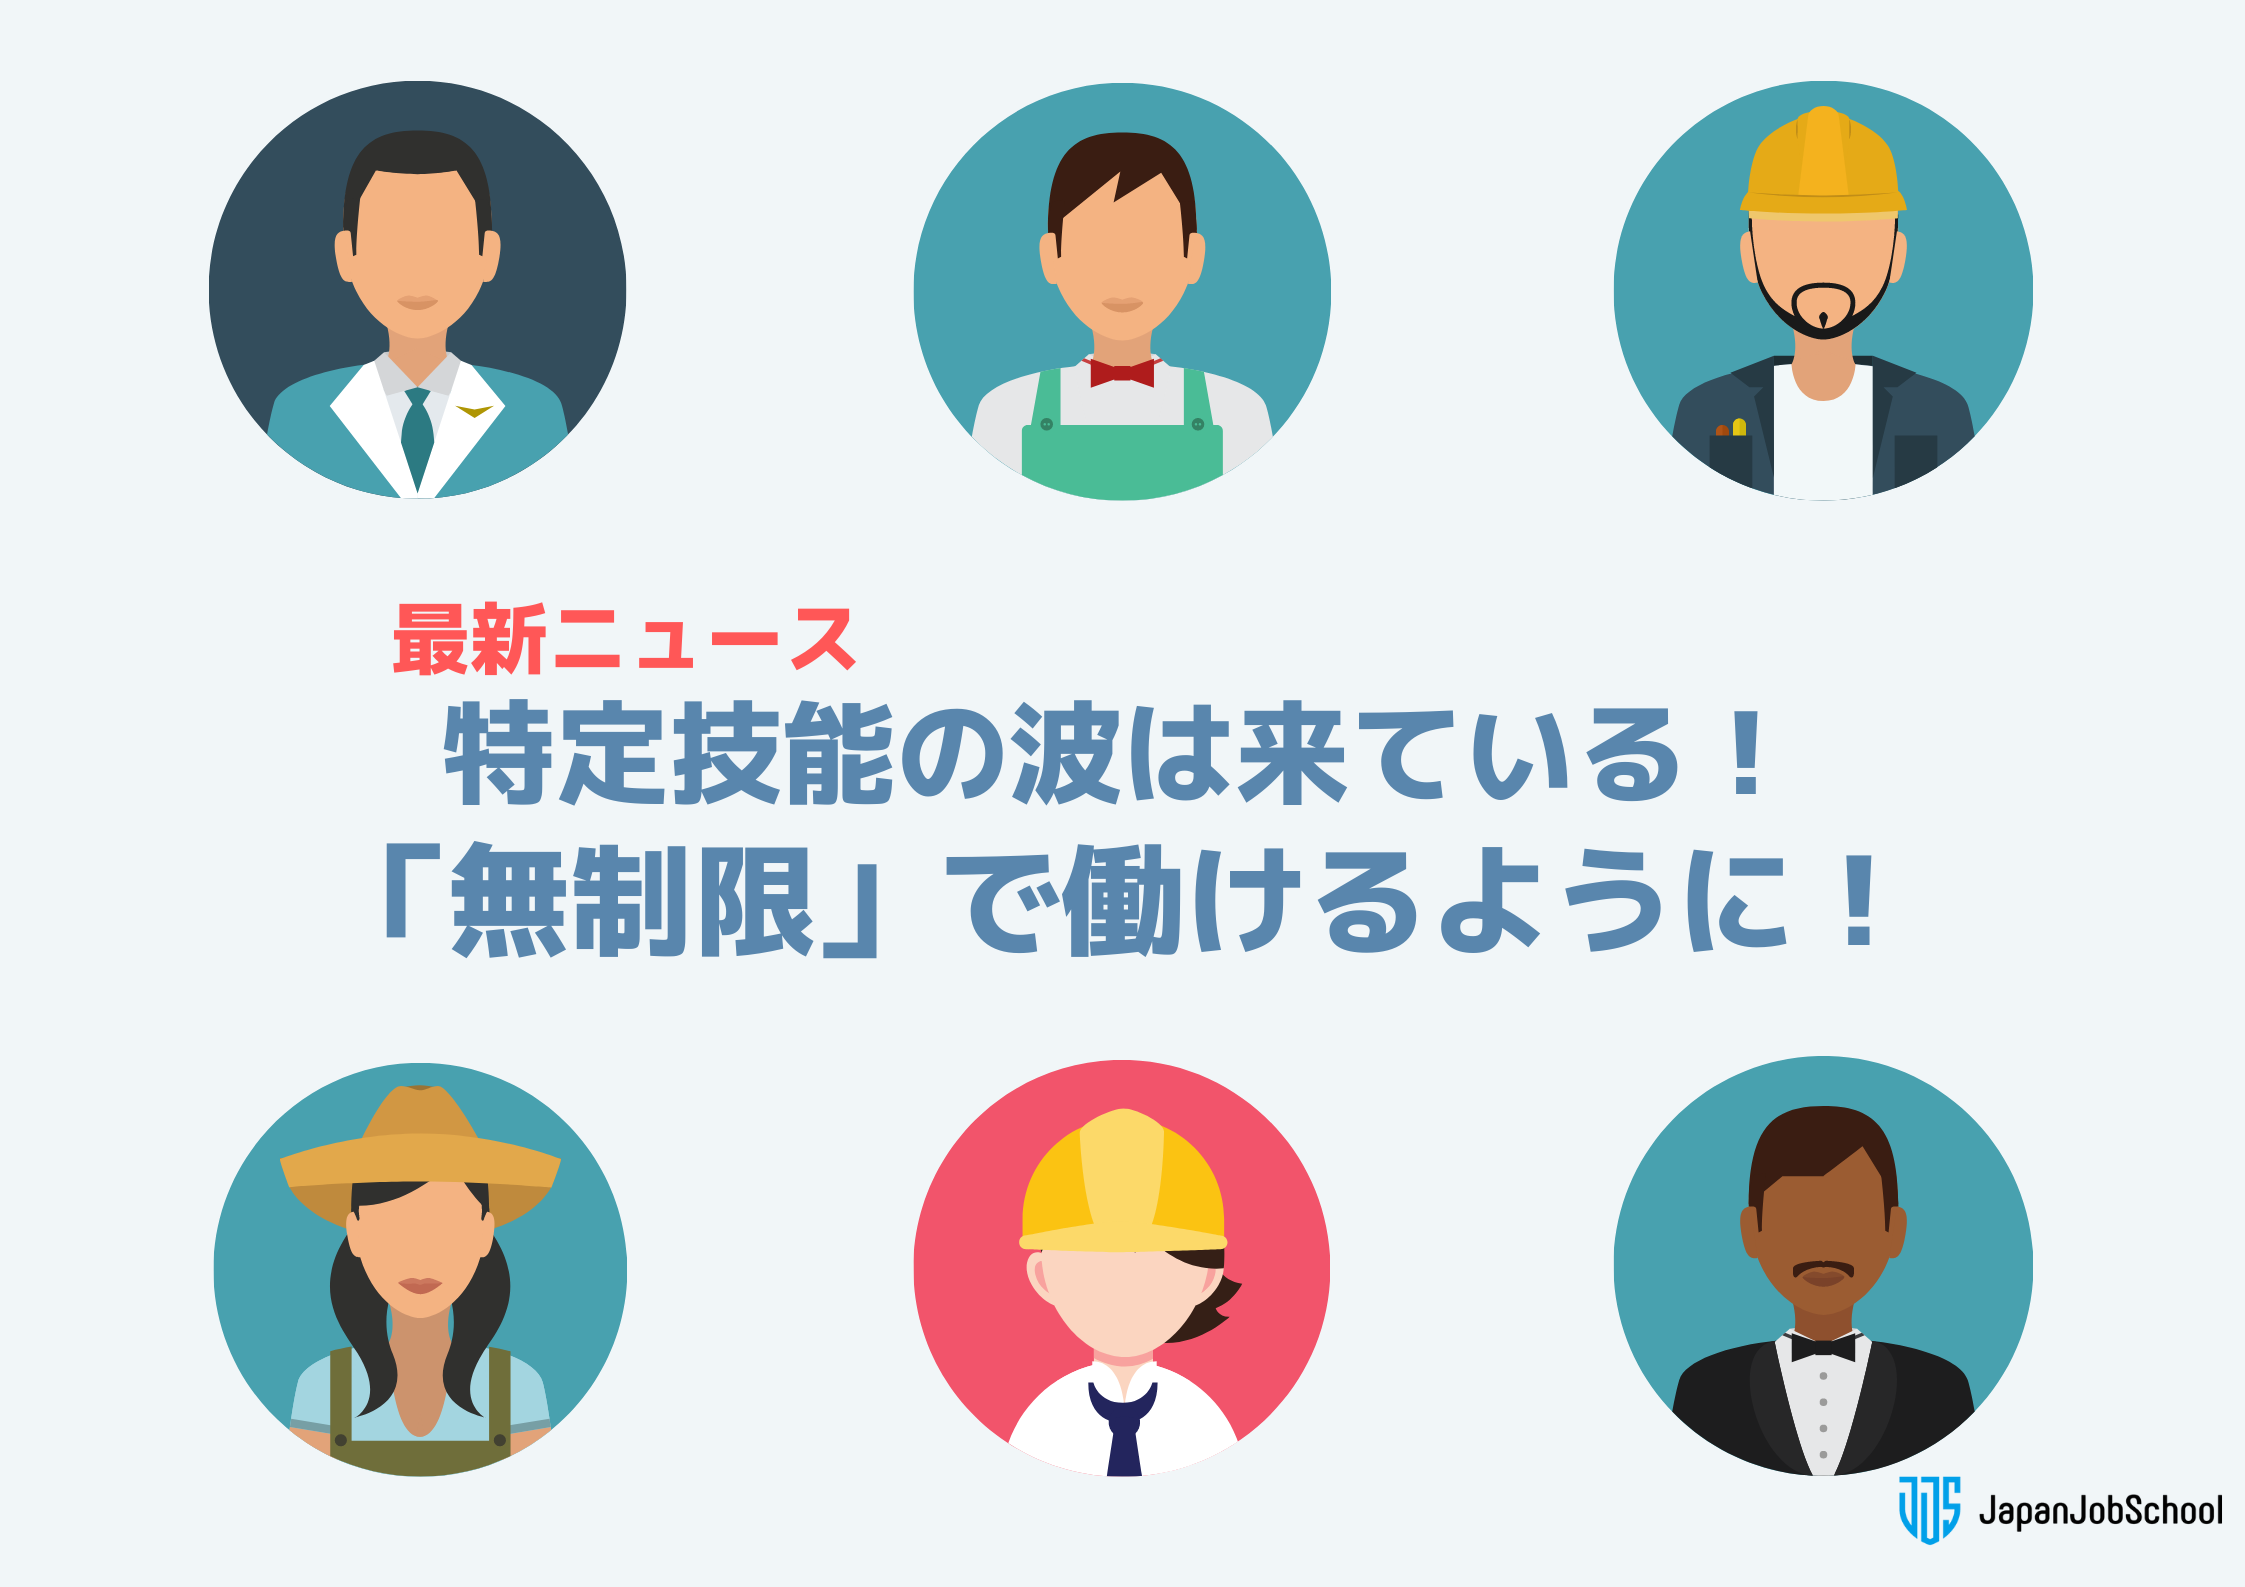 特定技能 無制限で働けるように 特定技能の波は来ている Japan Job School ジャパンジョブスクール